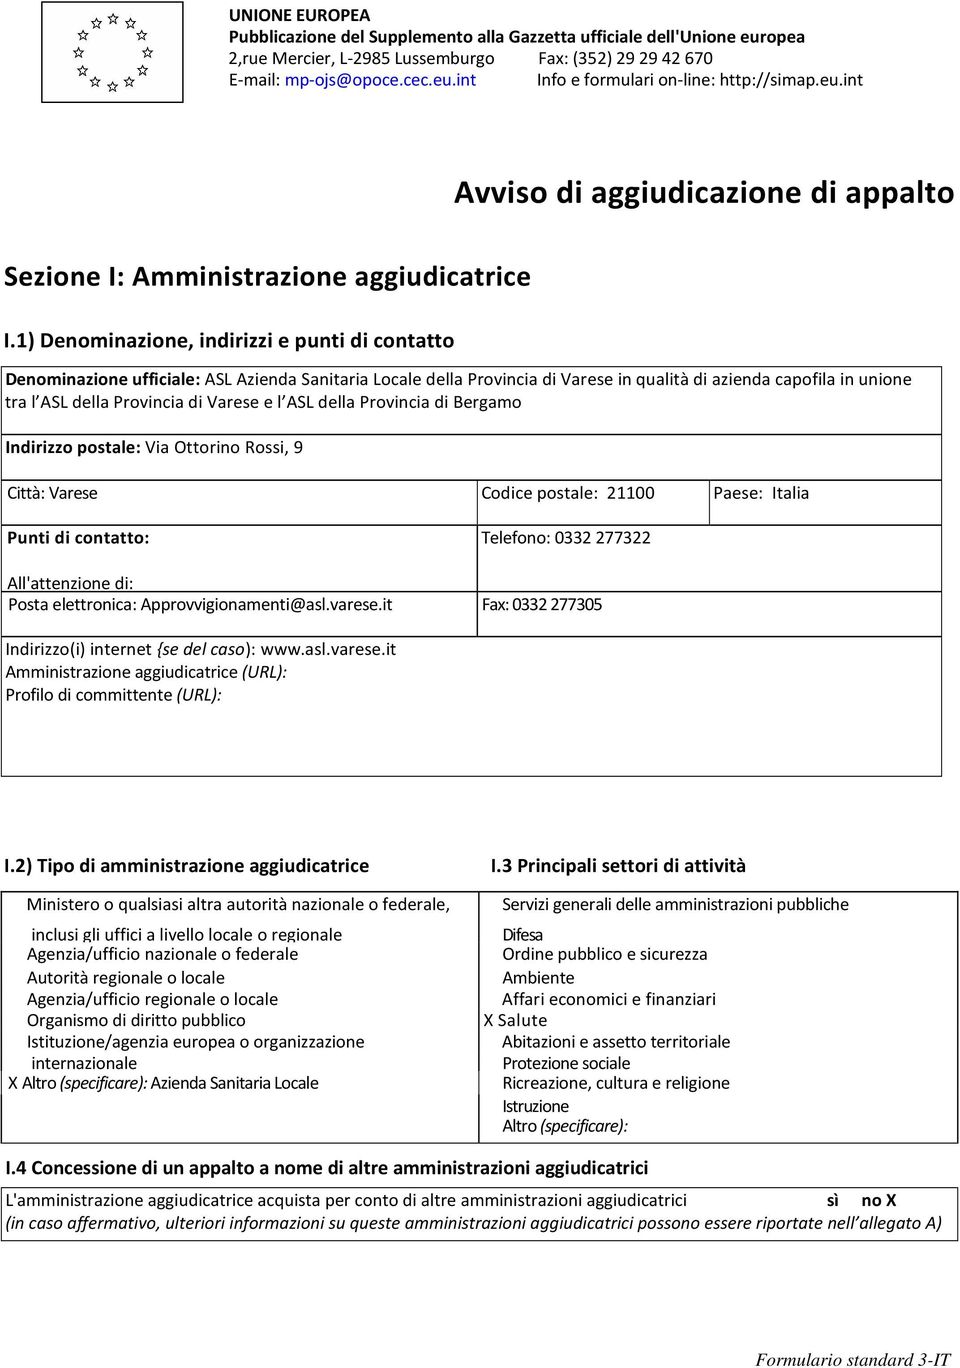 1) Denominazione, indirizzi e punti di contatto Denominazione ufficiale: ASL Azienda Sanitaria Locale della Provincia di Varese in qualità di azienda capofila in unione tra l ASL della Provincia di